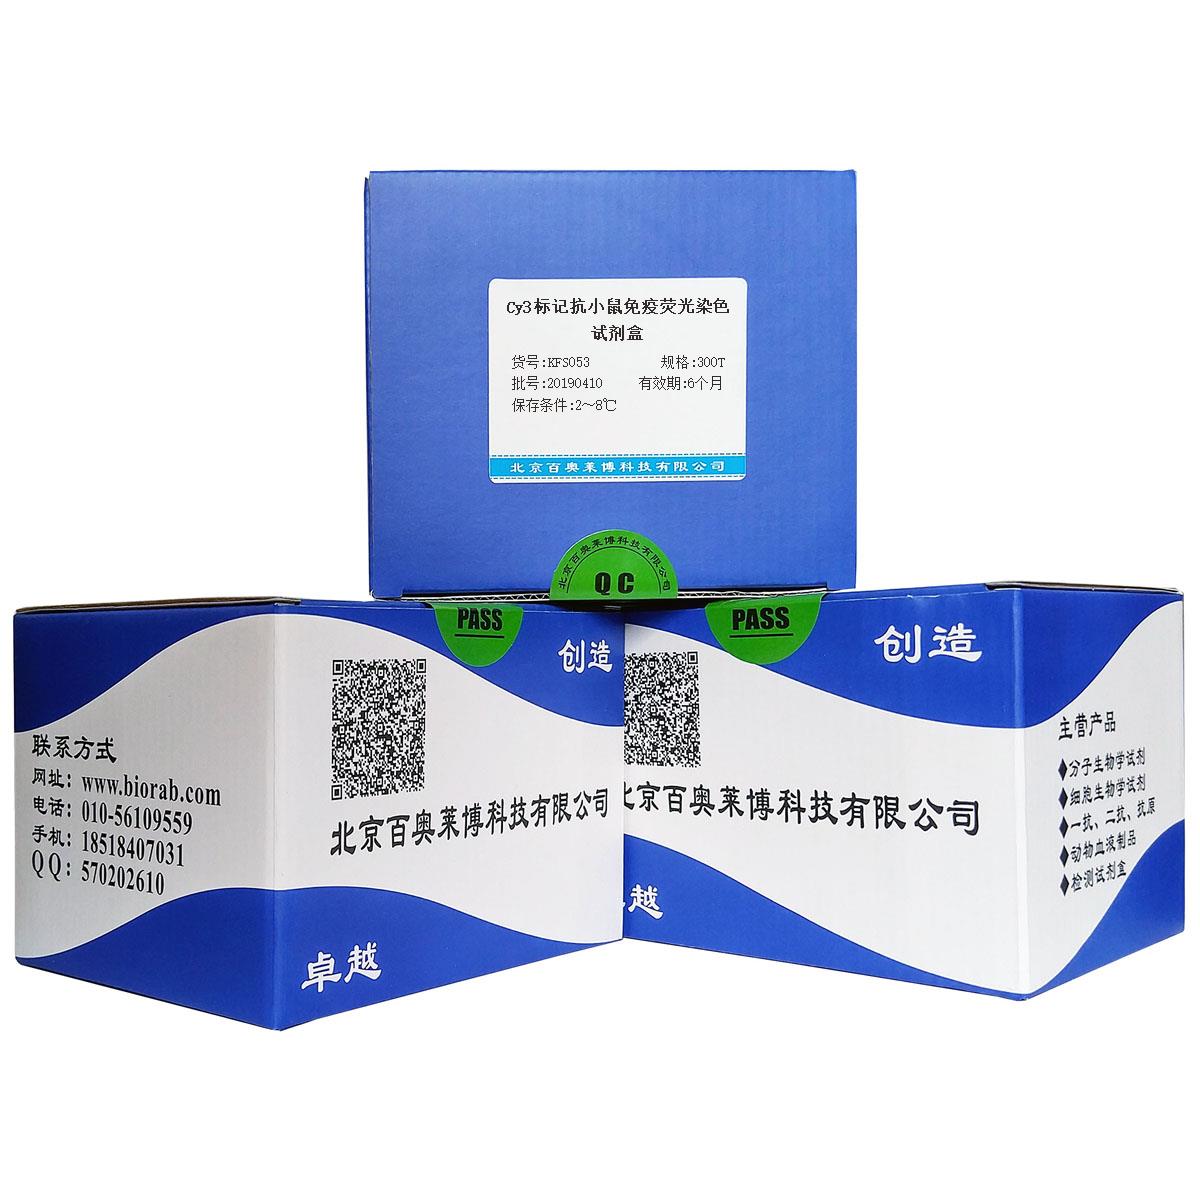 Cy3标记抗小鼠免疫荧光染色试剂盒北京供应商